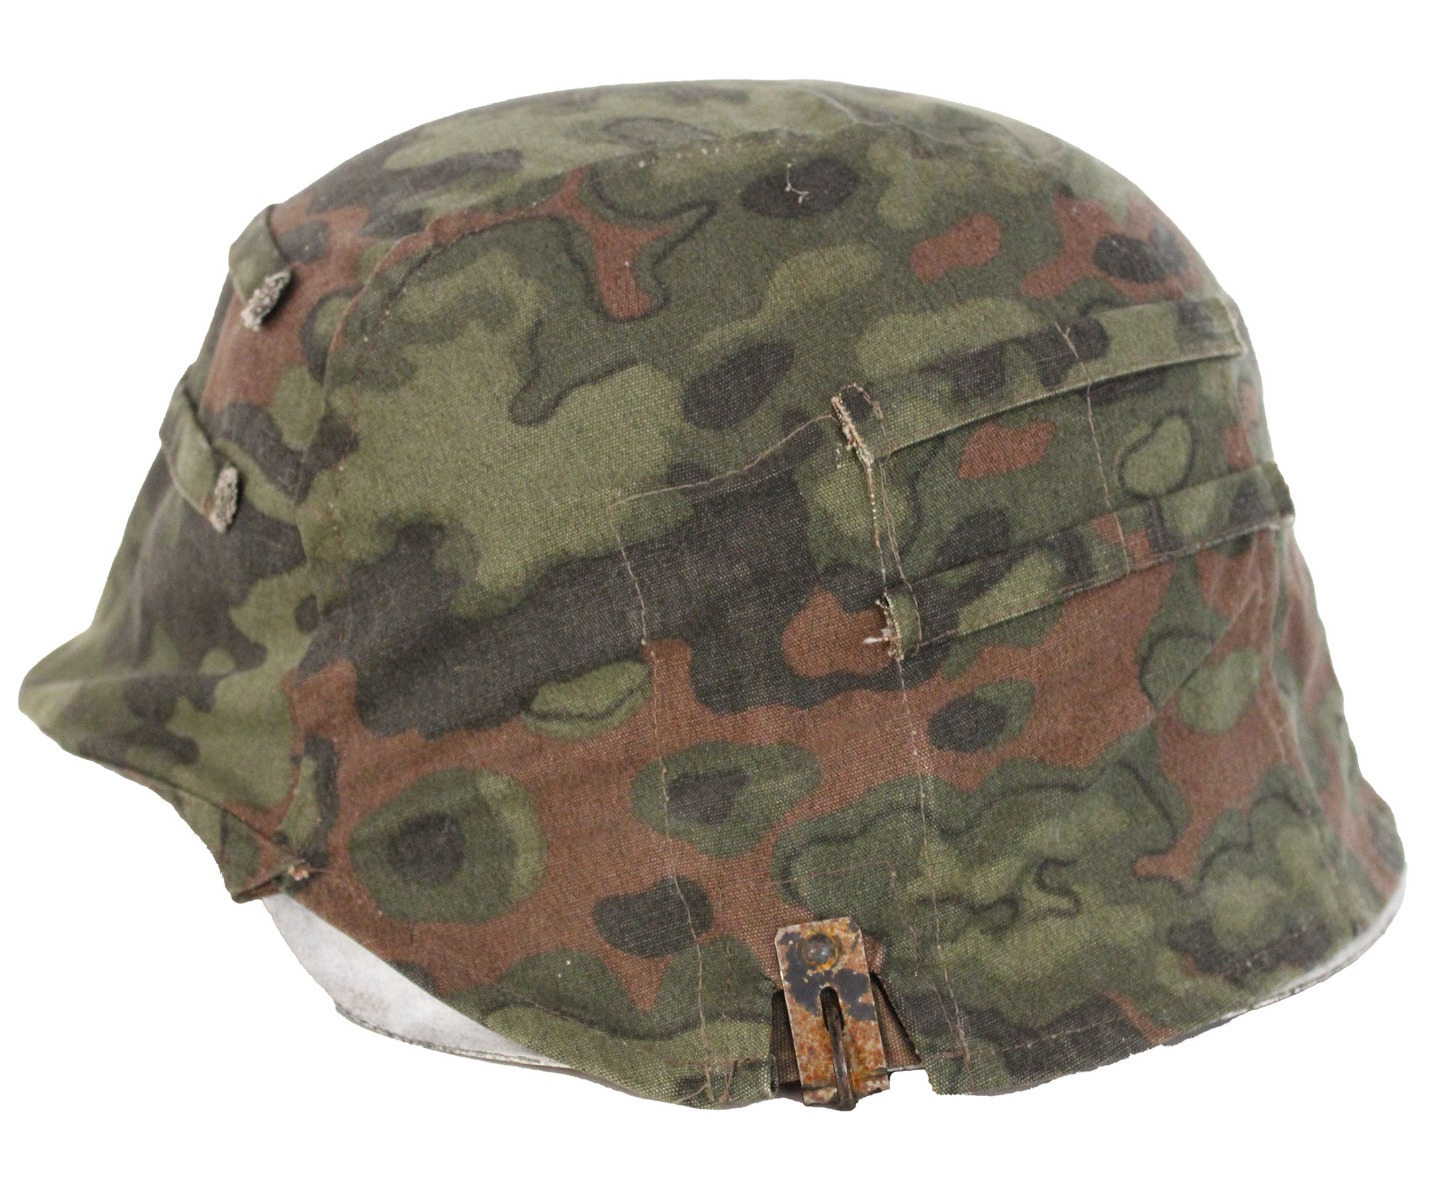 SS Helmet Skull Cap for Men’s